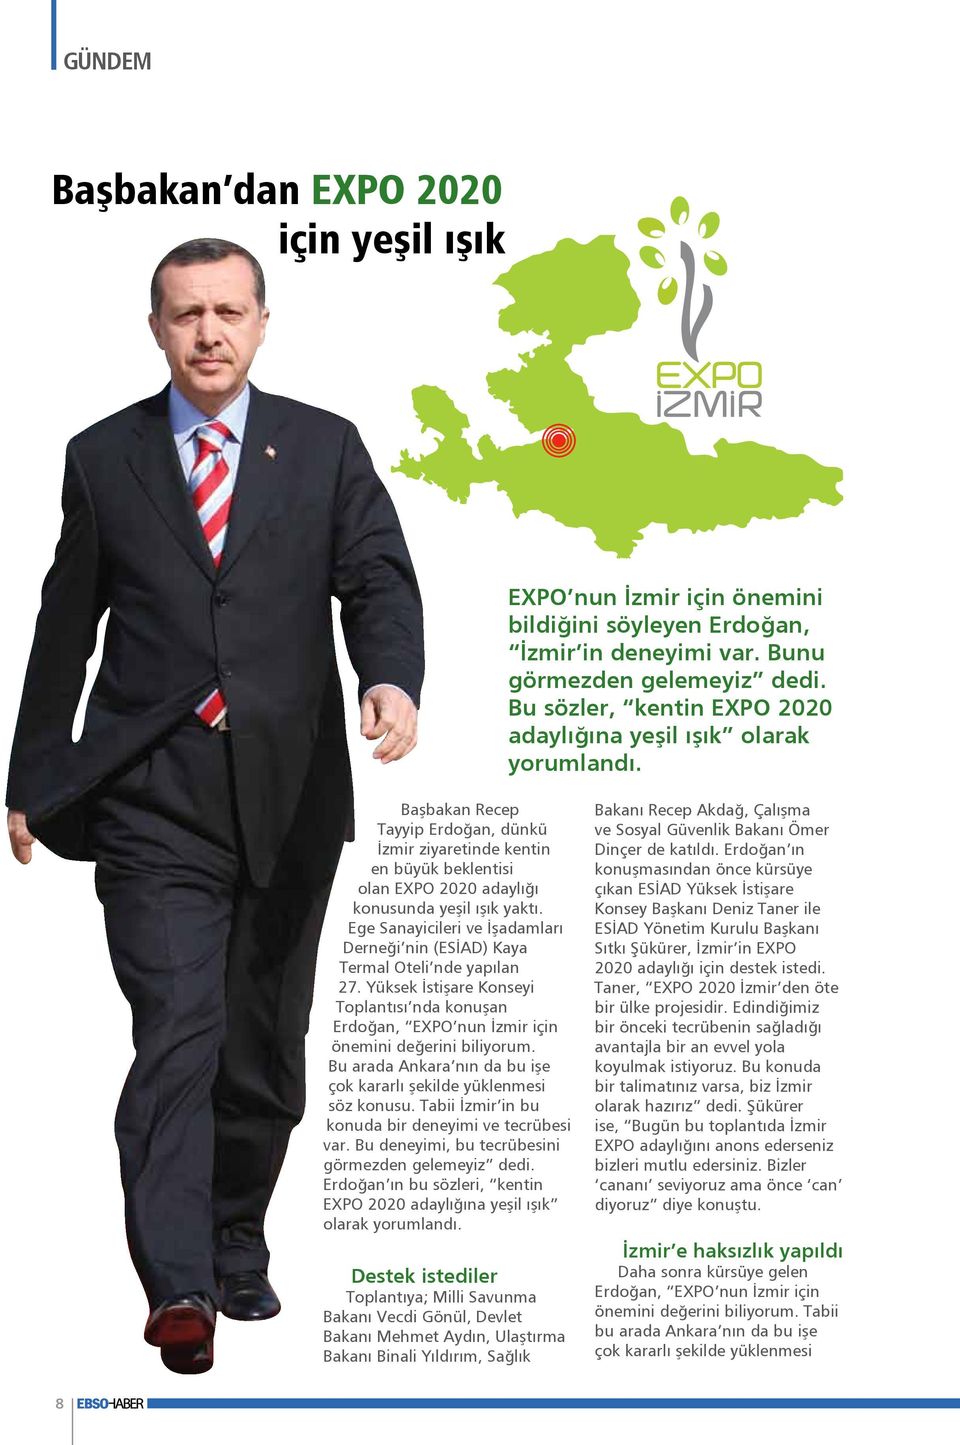 Başbakan Recep Tayyip Erdoğan, dünkü İzmir ziyaretinde kentin en büyük beklentisi olan EXPO 2020 adaylığı konusunda yeşil ışık yaktı.